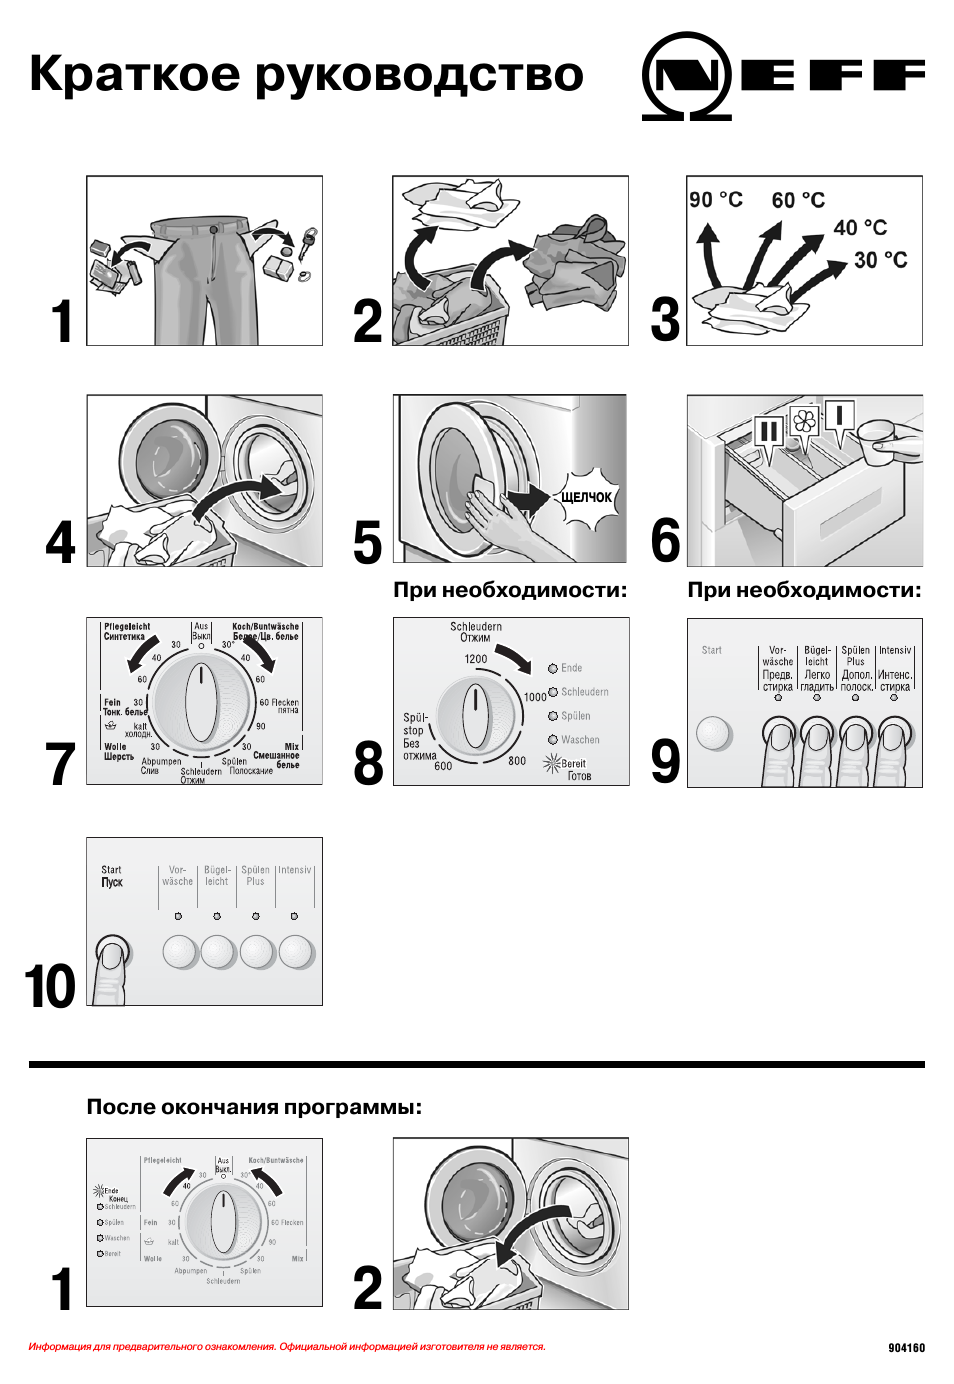 Как перезагрузить стиральную машину индезит самостоятельно